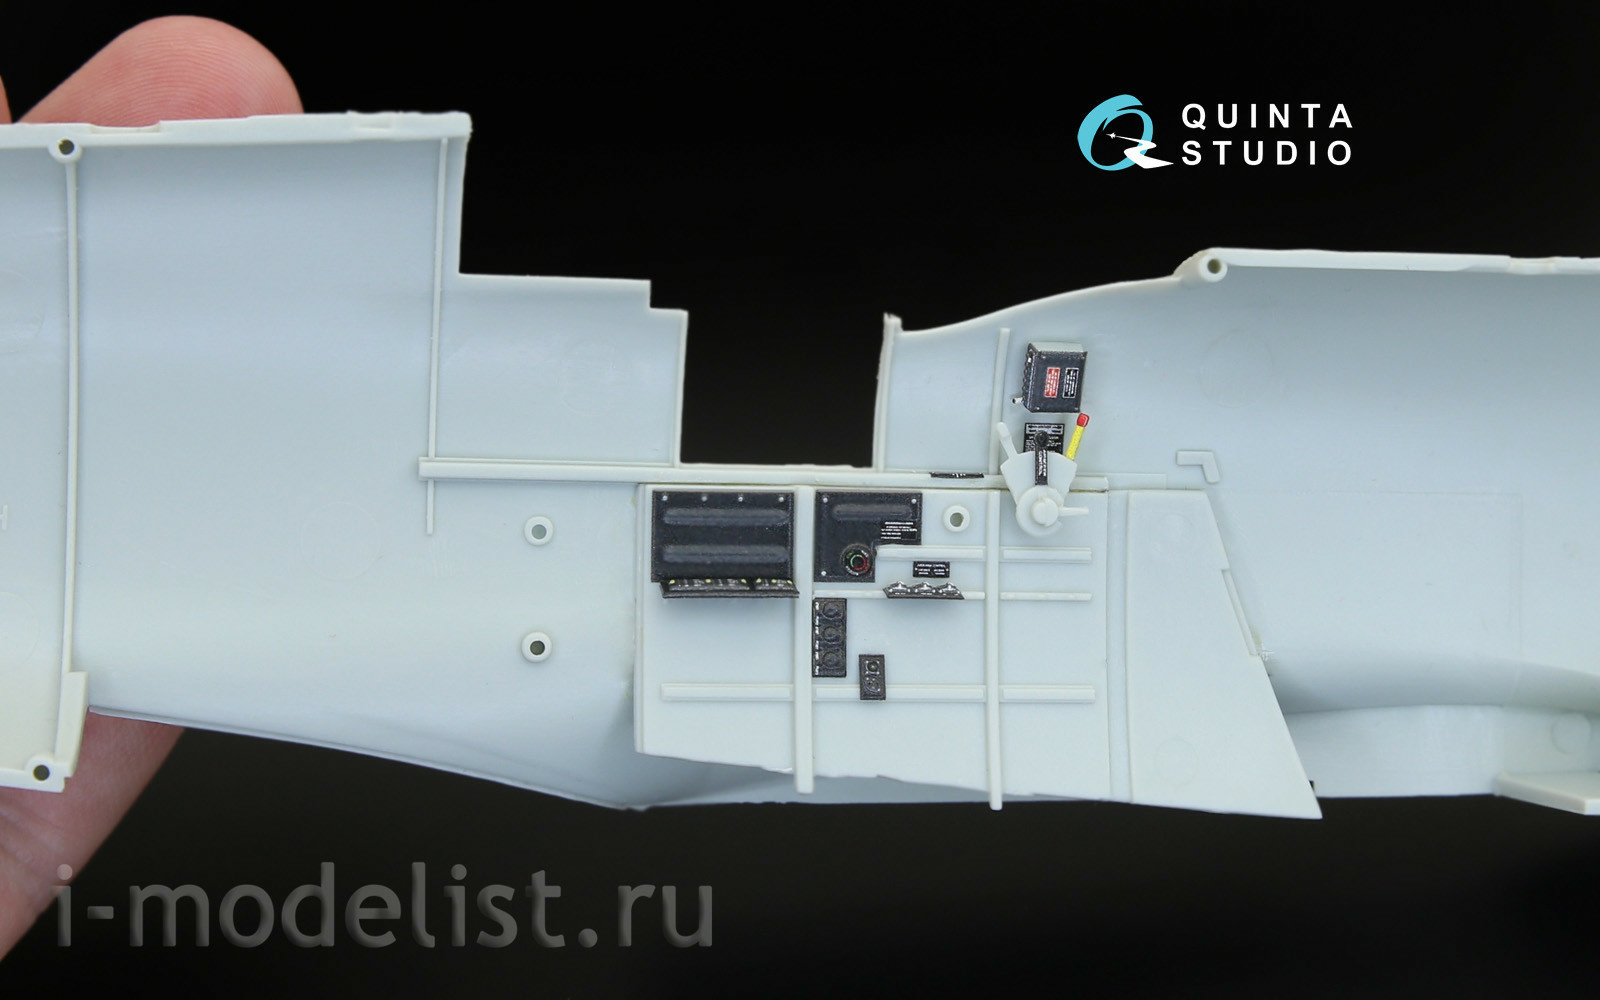 QD32044 Quinta Studio 1/32 3D Декаль интерьера кабины Spitfire Mk. IX (для модели Revell)